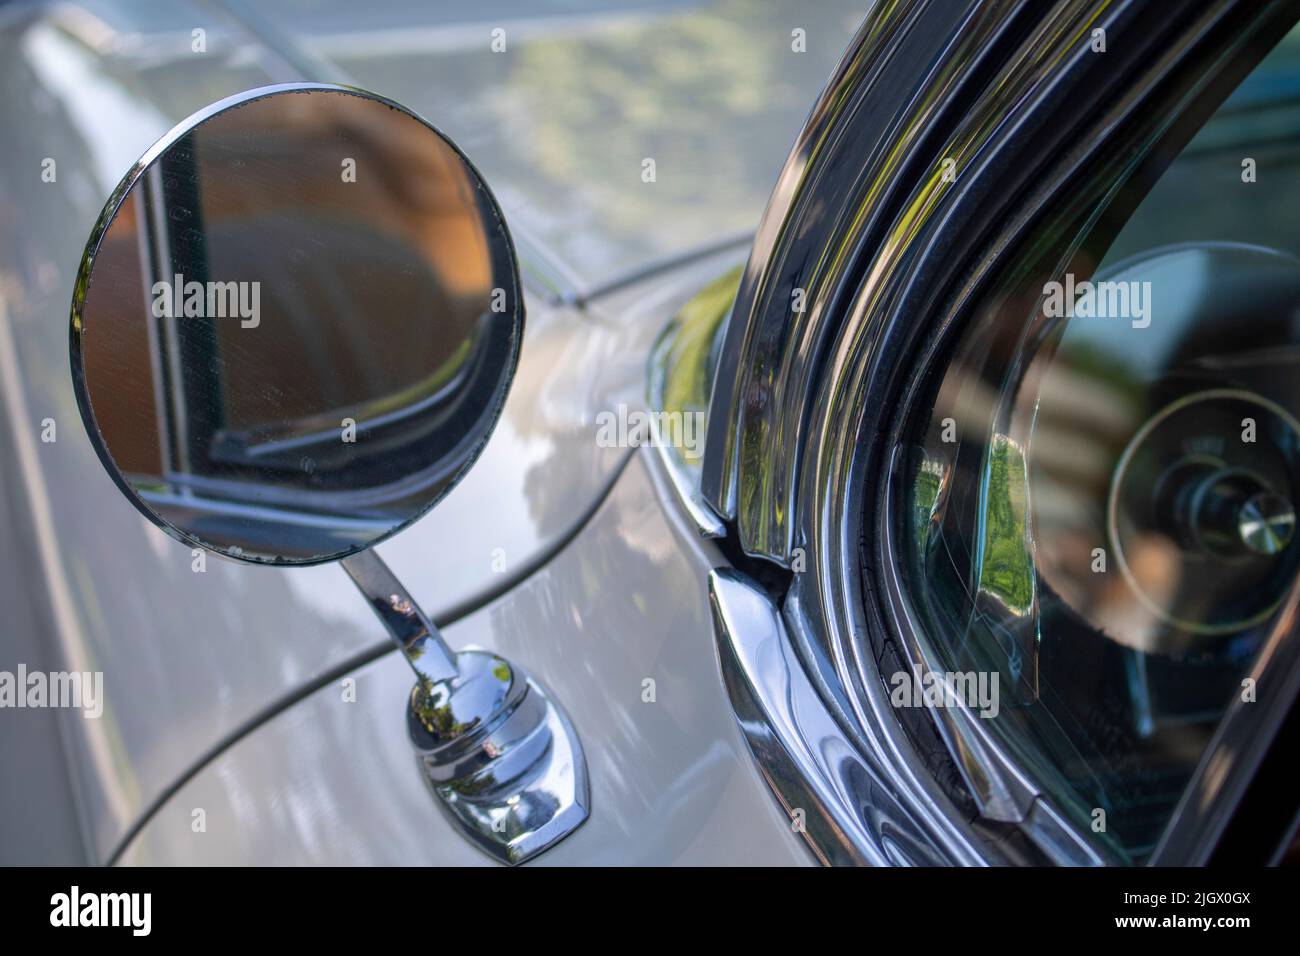 une vue arrière ronde et une image morose d'une voiture classique Banque D'Images